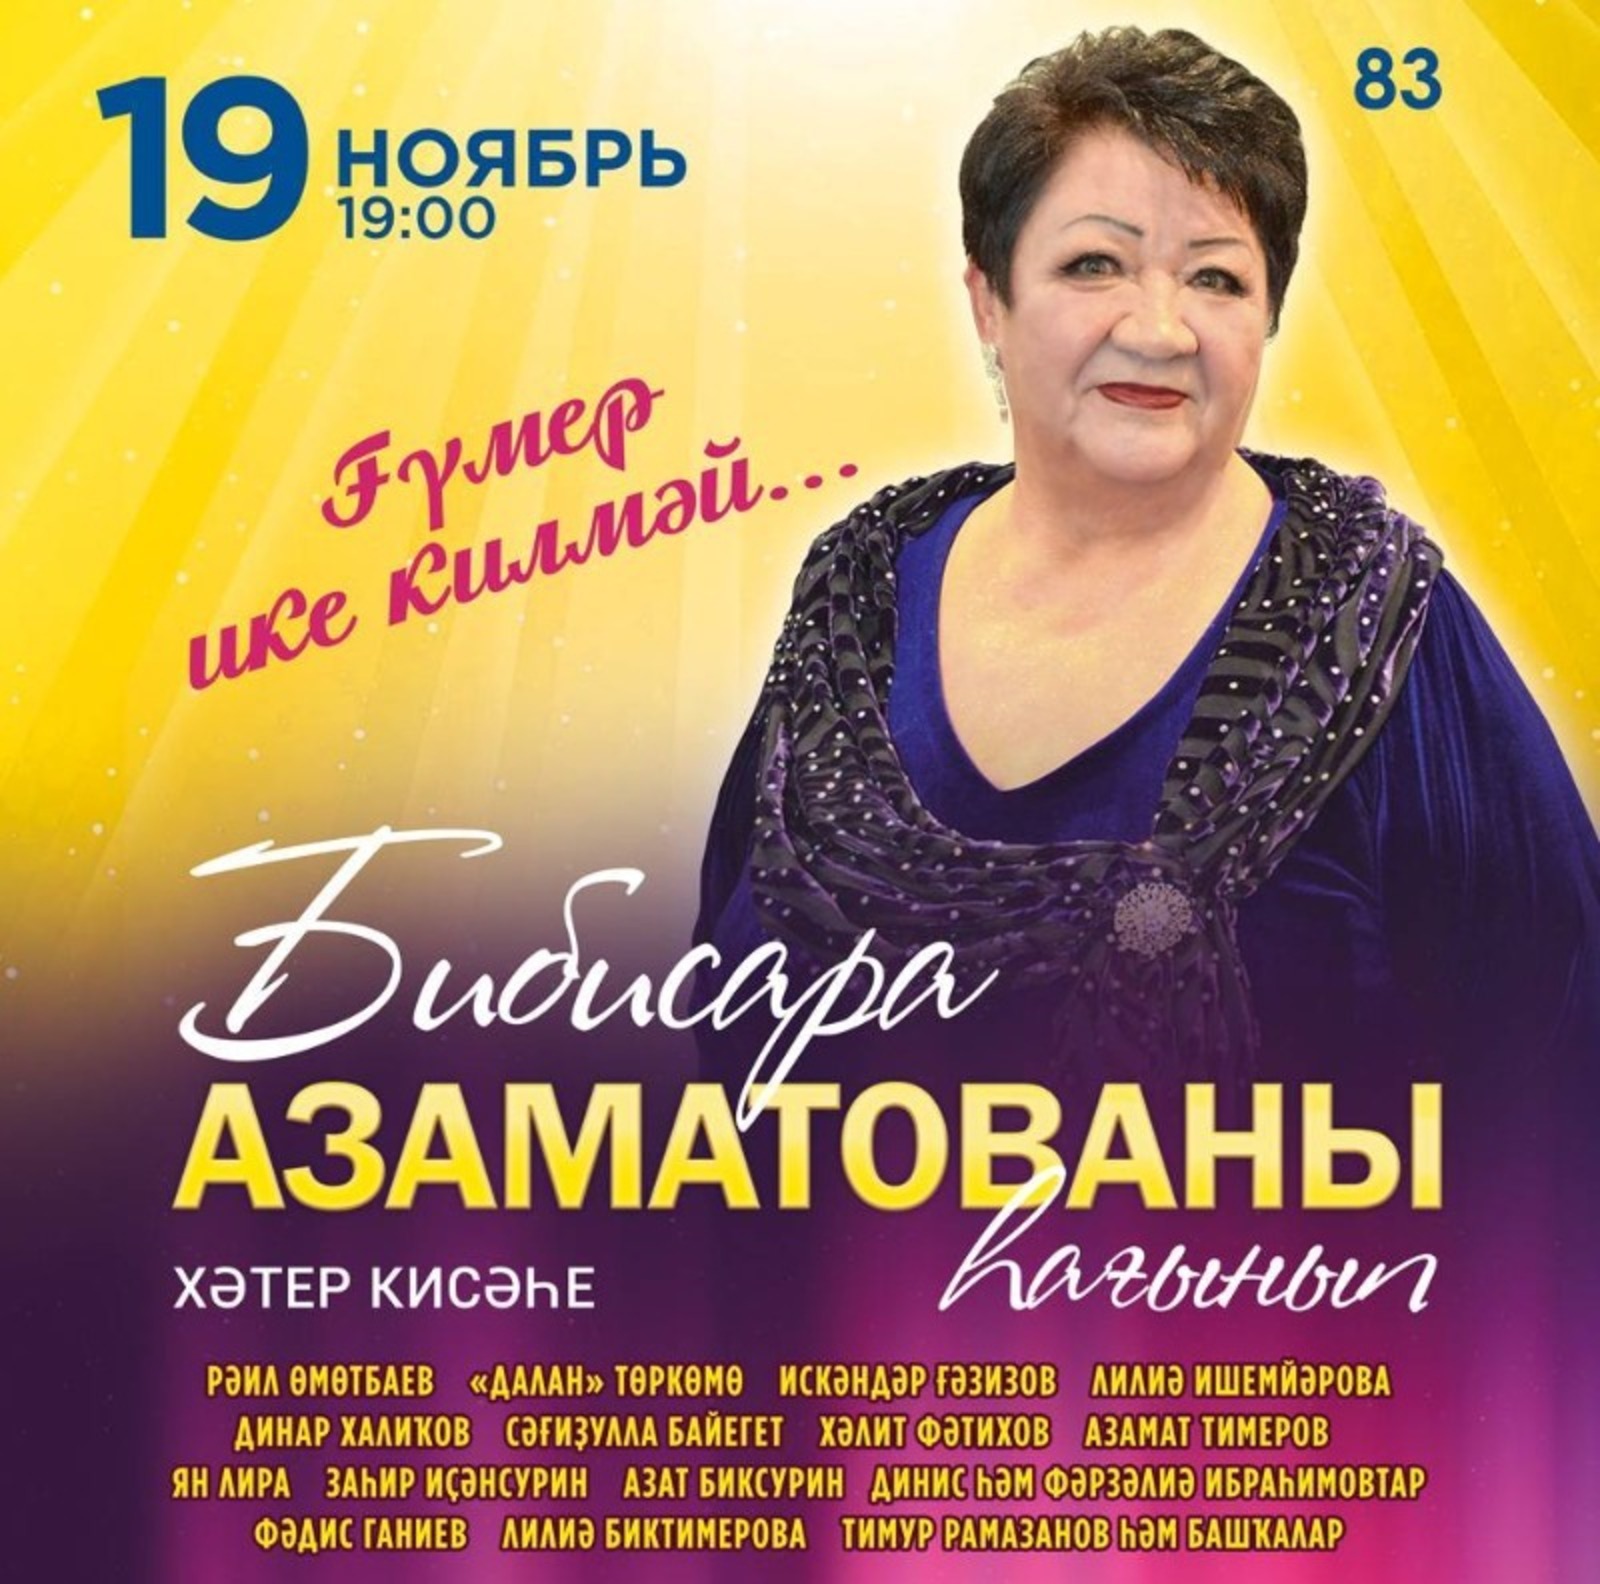 В Уфе пройдет концерт памяти Бибисары Азаматовой, безвременно ушедшей от COVID-19